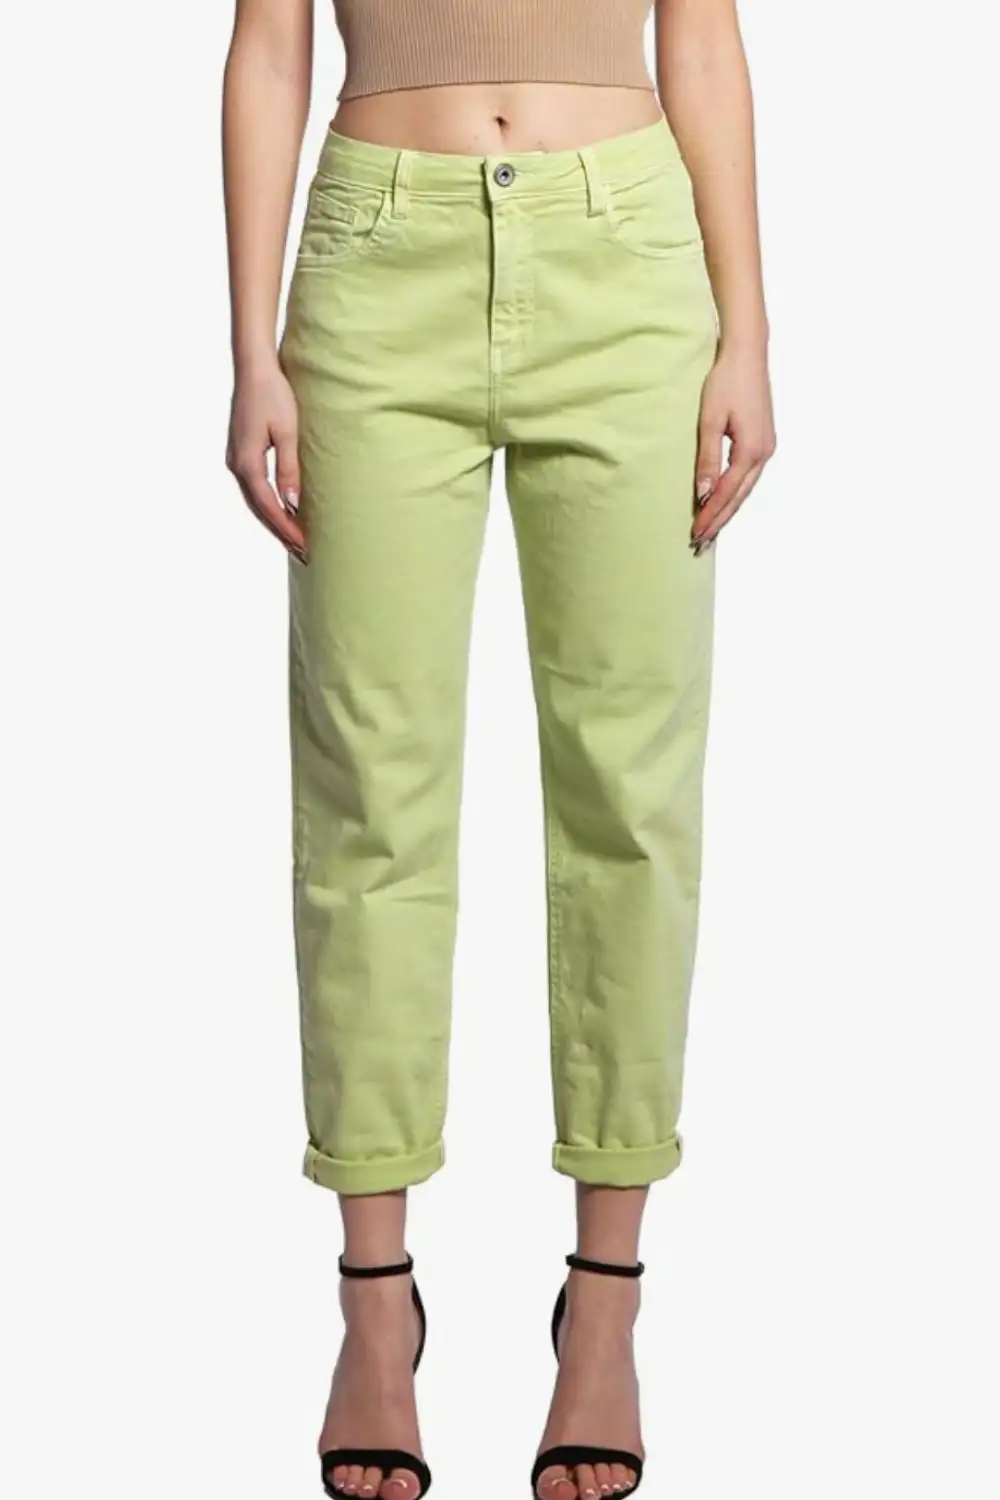 pantalones verdes 1